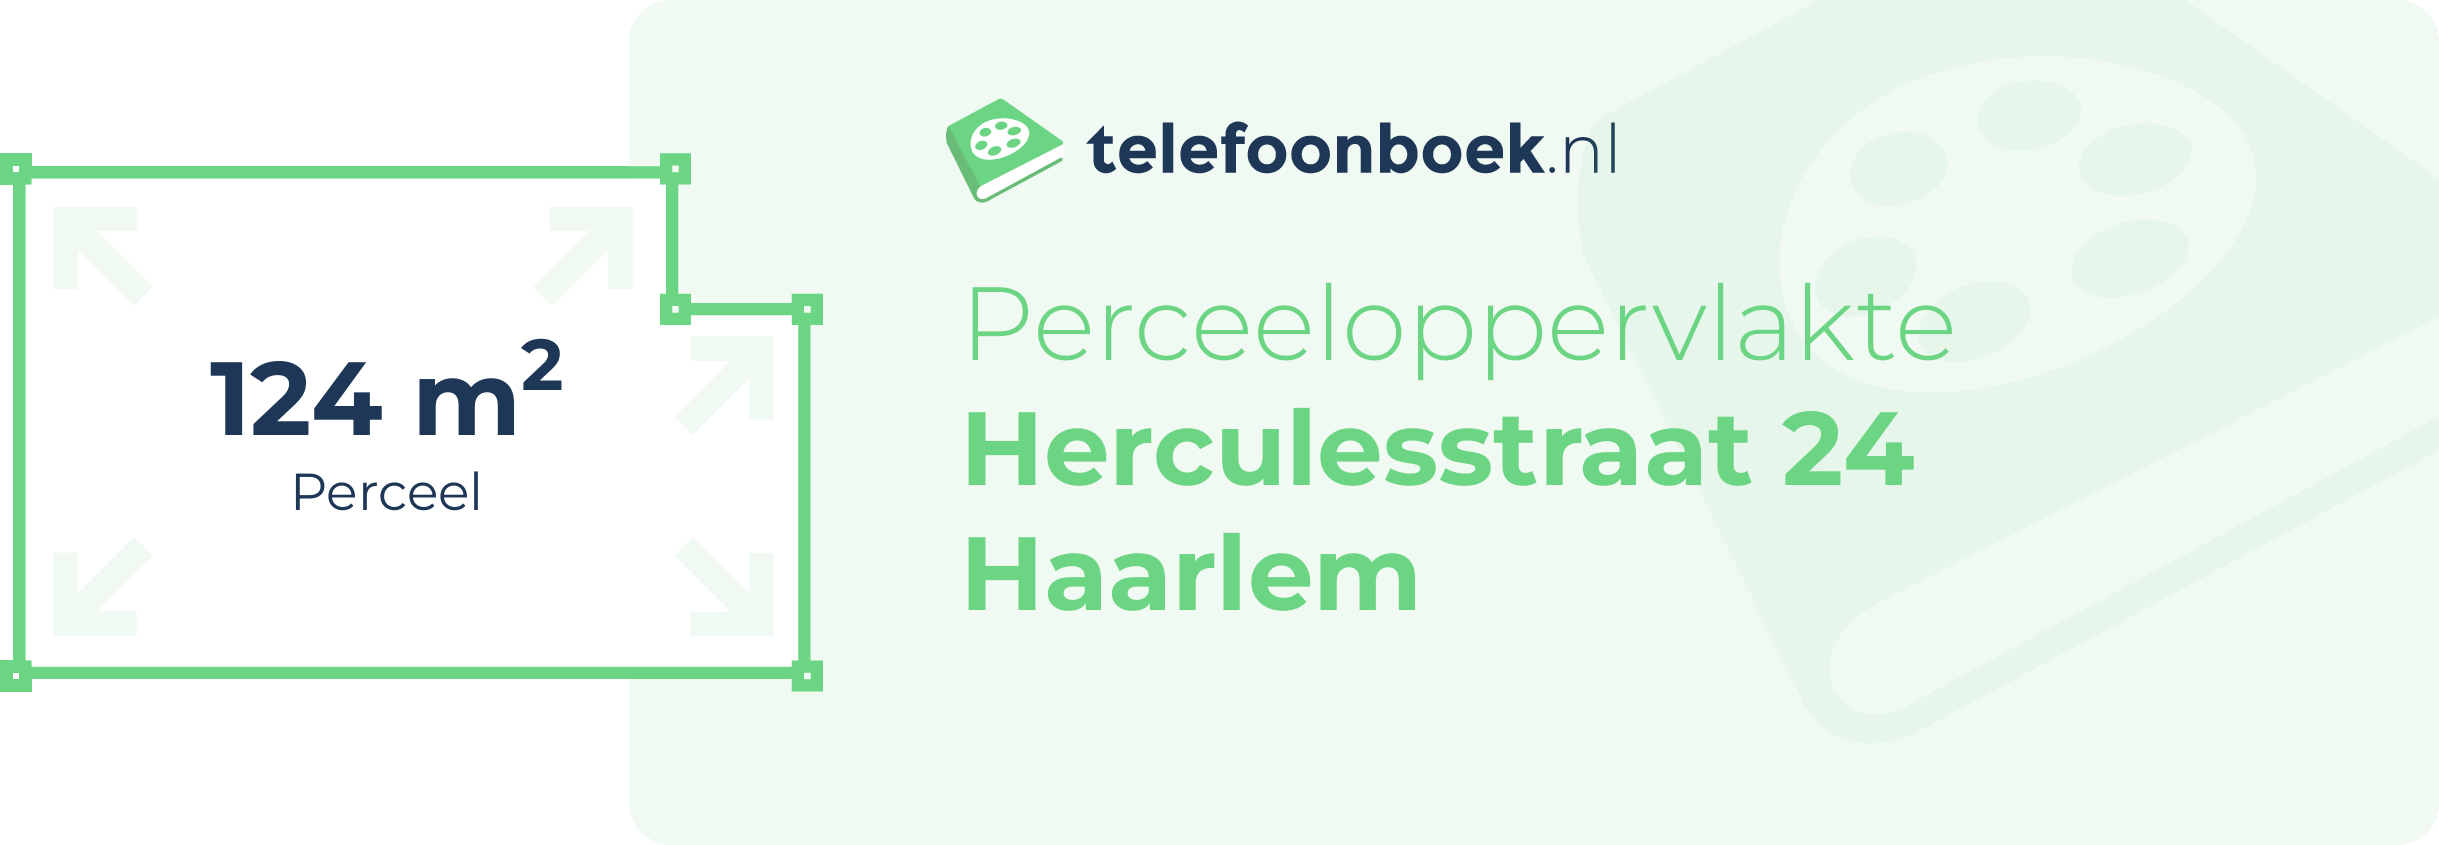 Perceeloppervlakte Herculesstraat 24 Haarlem